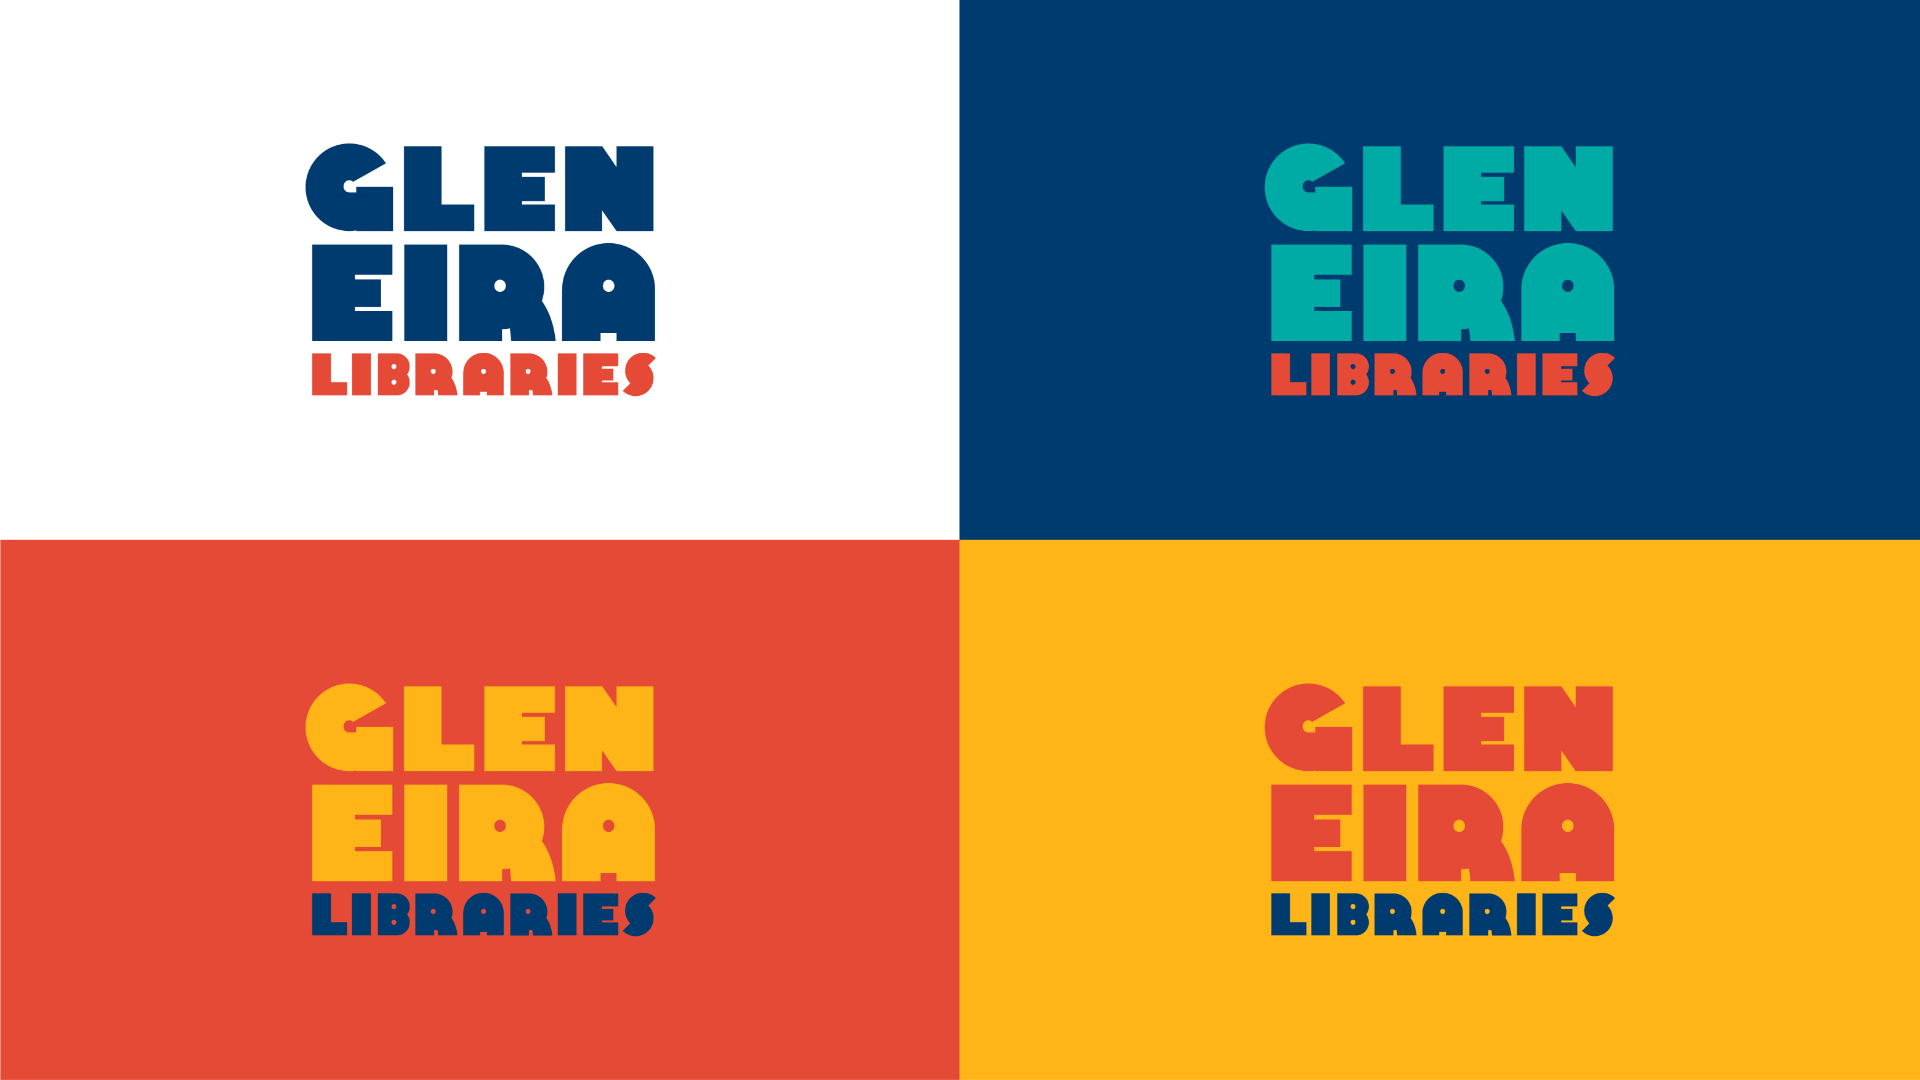 Glen Eira Libraries logo shown on various background colours.